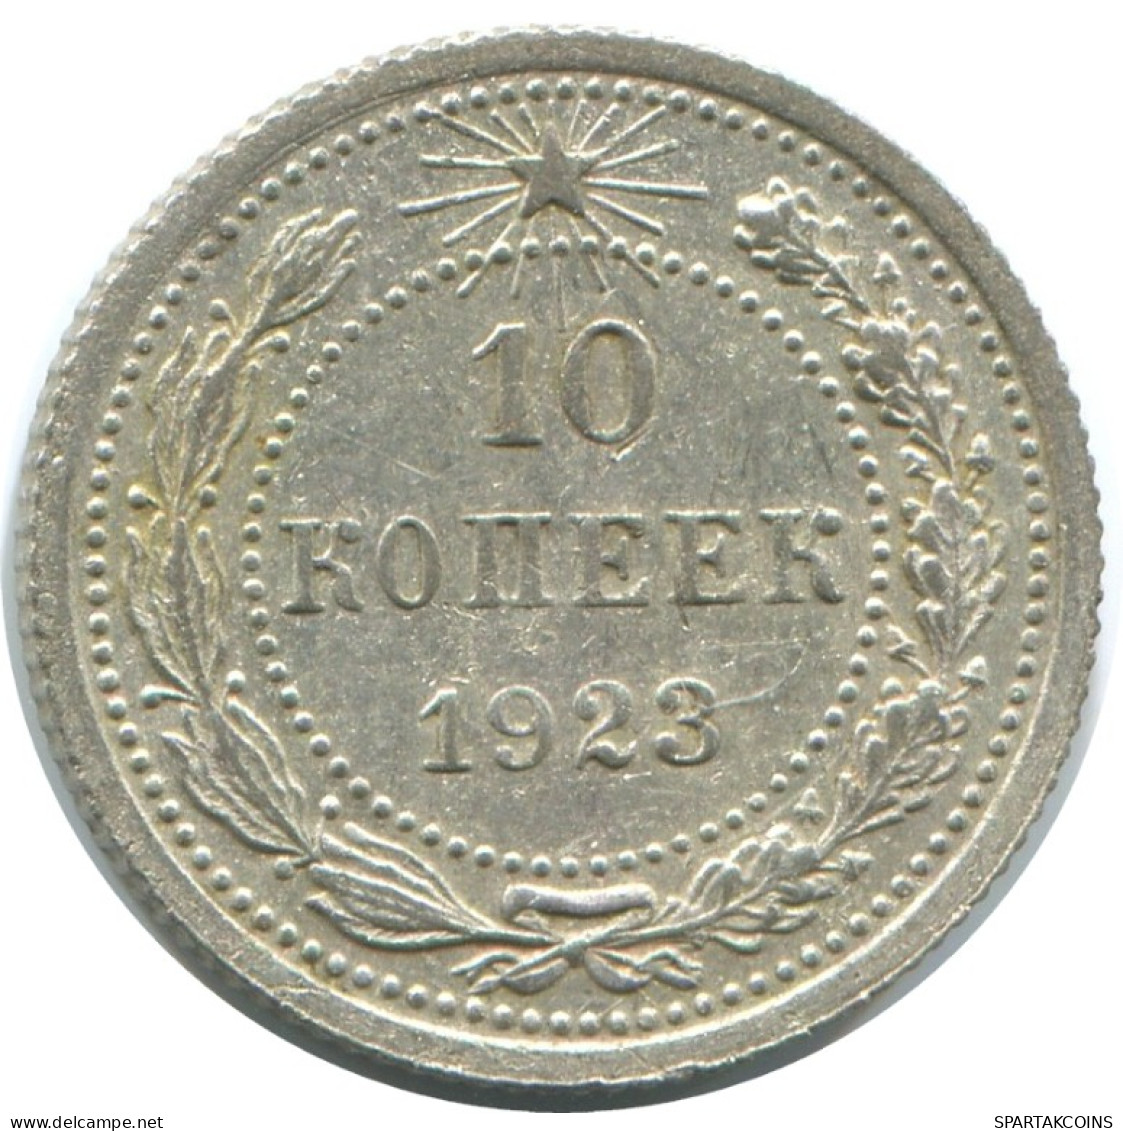 10 KOPEKS 1923 RUSSLAND RUSSIA RSFSR SILBER Münze HIGH GRADE #AE992.4.D.A - Russie